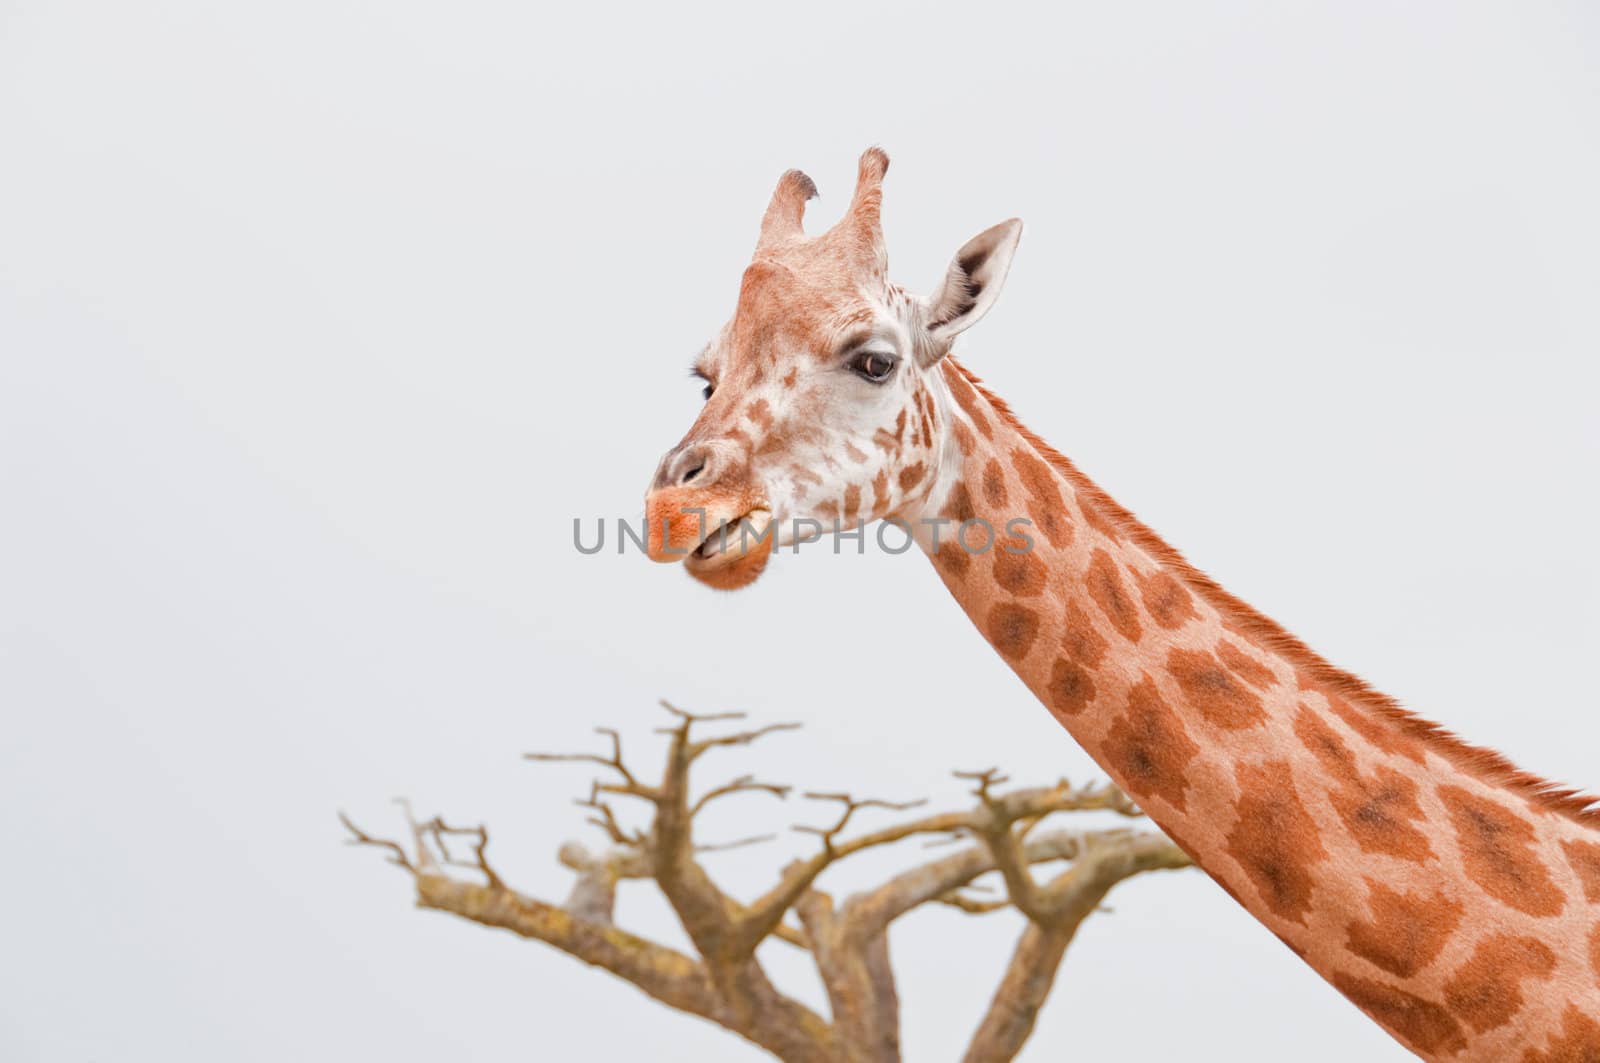 Giraffe by GryT